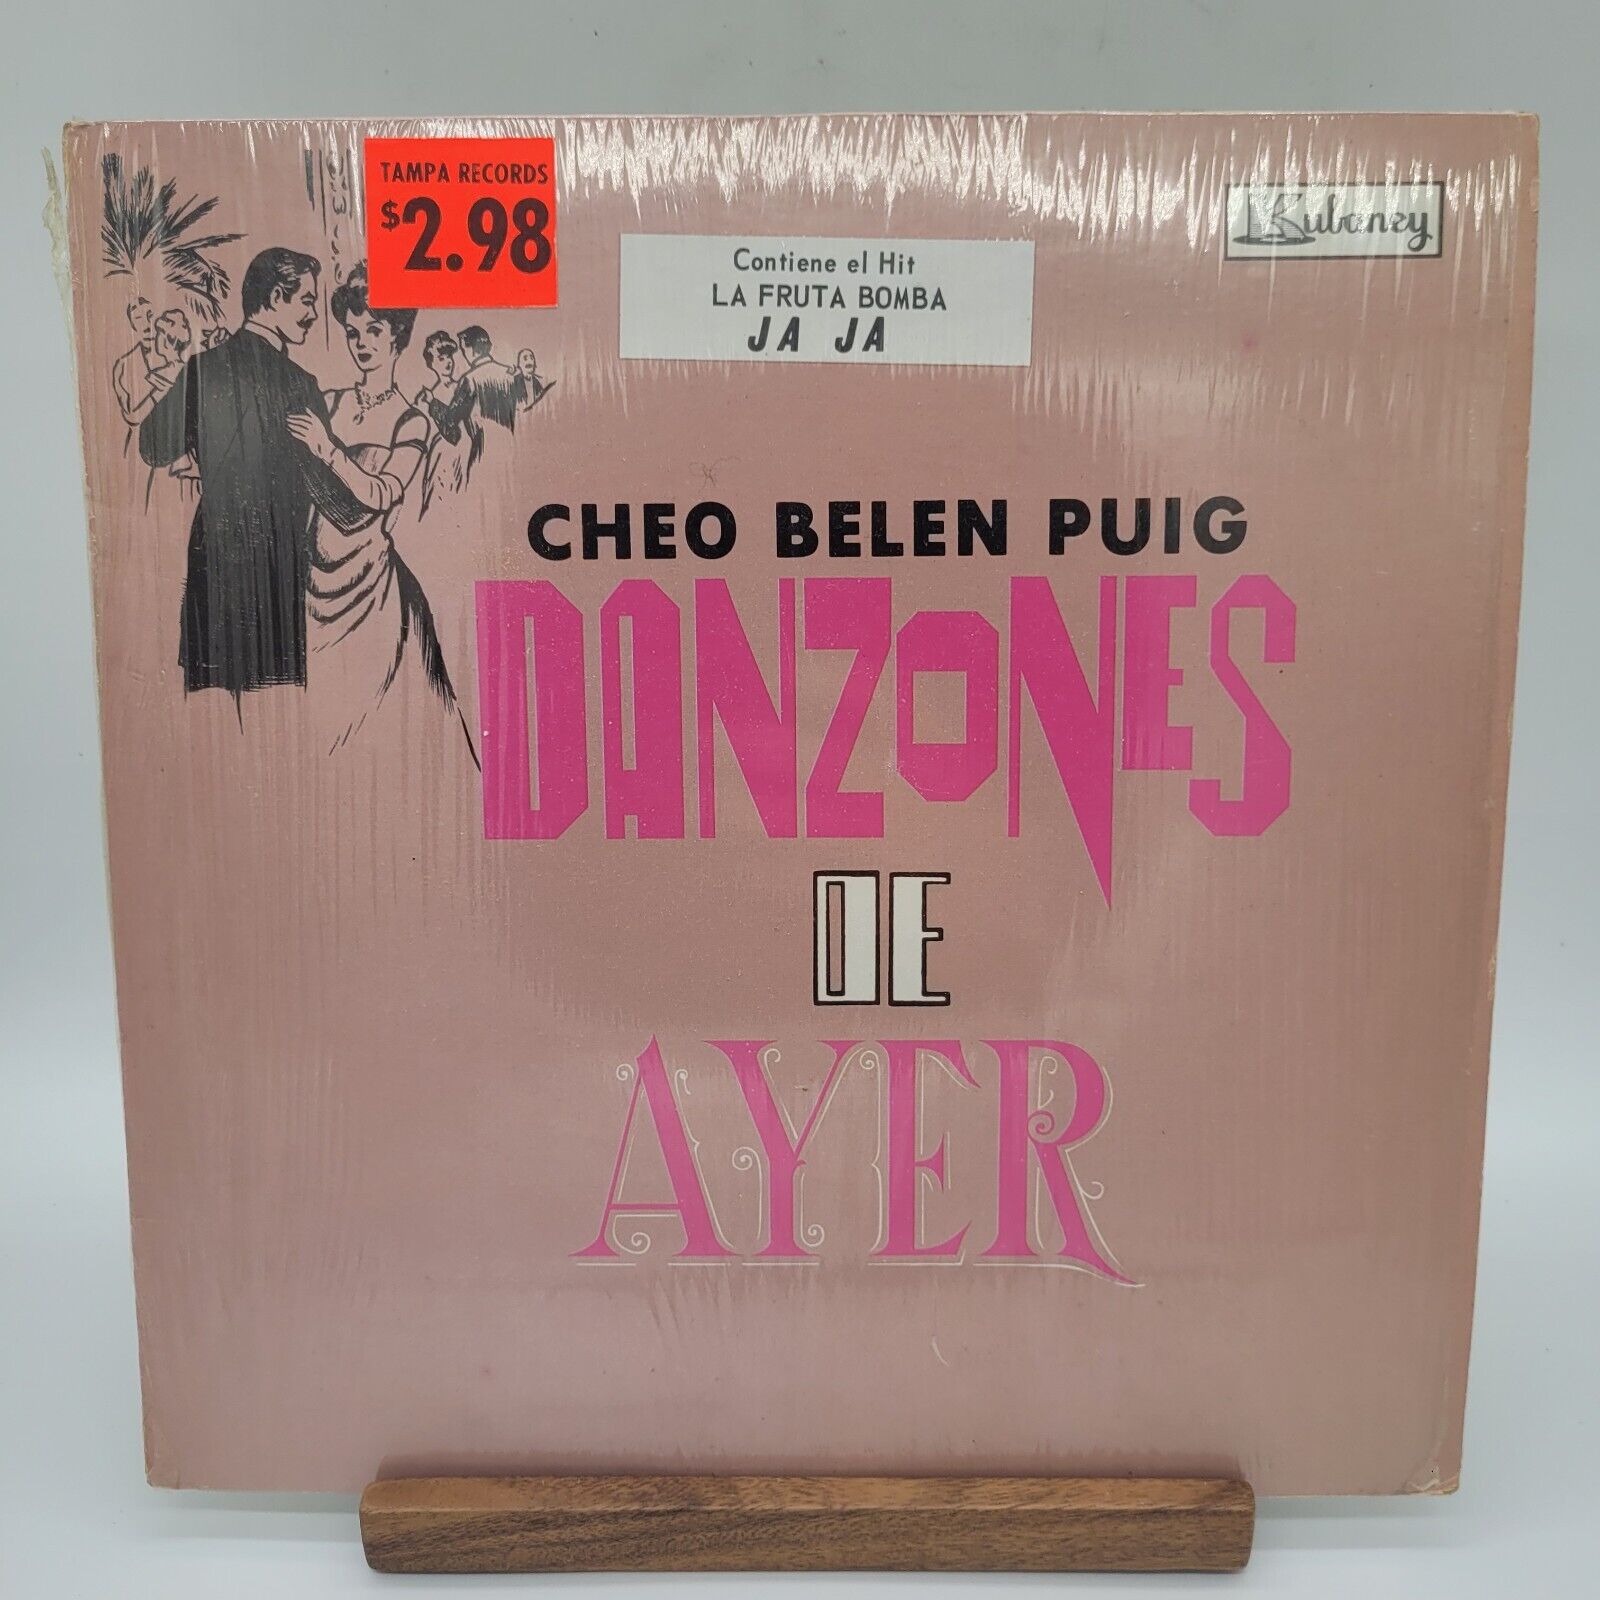 Cheo Belen Puig Danzones De Ayer Rare Record Latin Import Album Vinyl In Shrink